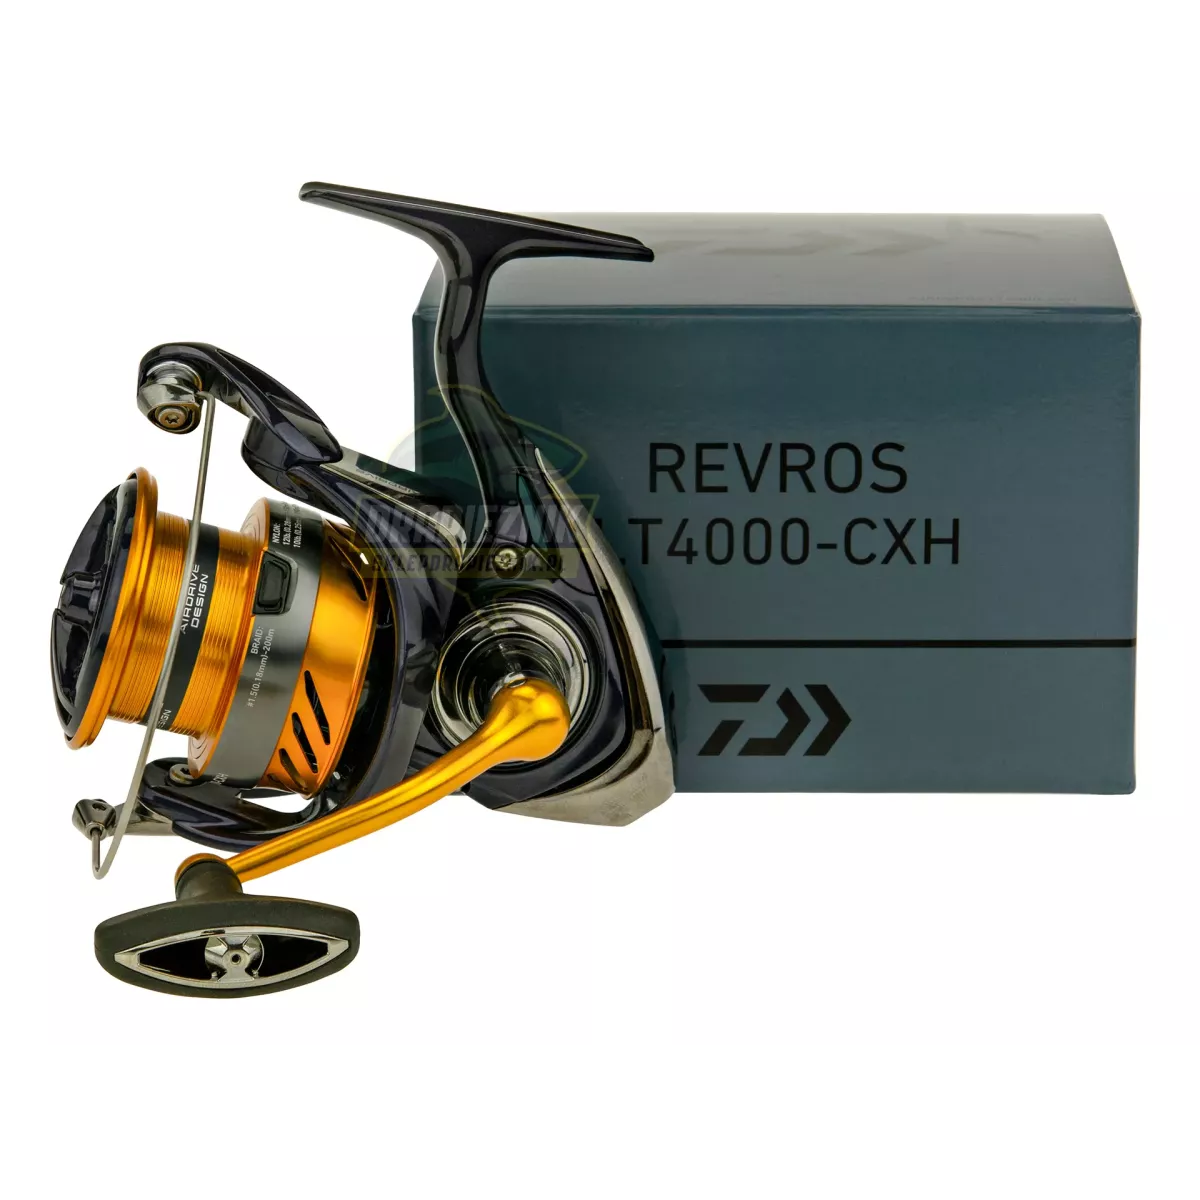 Kołowrotek Daiwa 23 Revros LT 4000-CXH